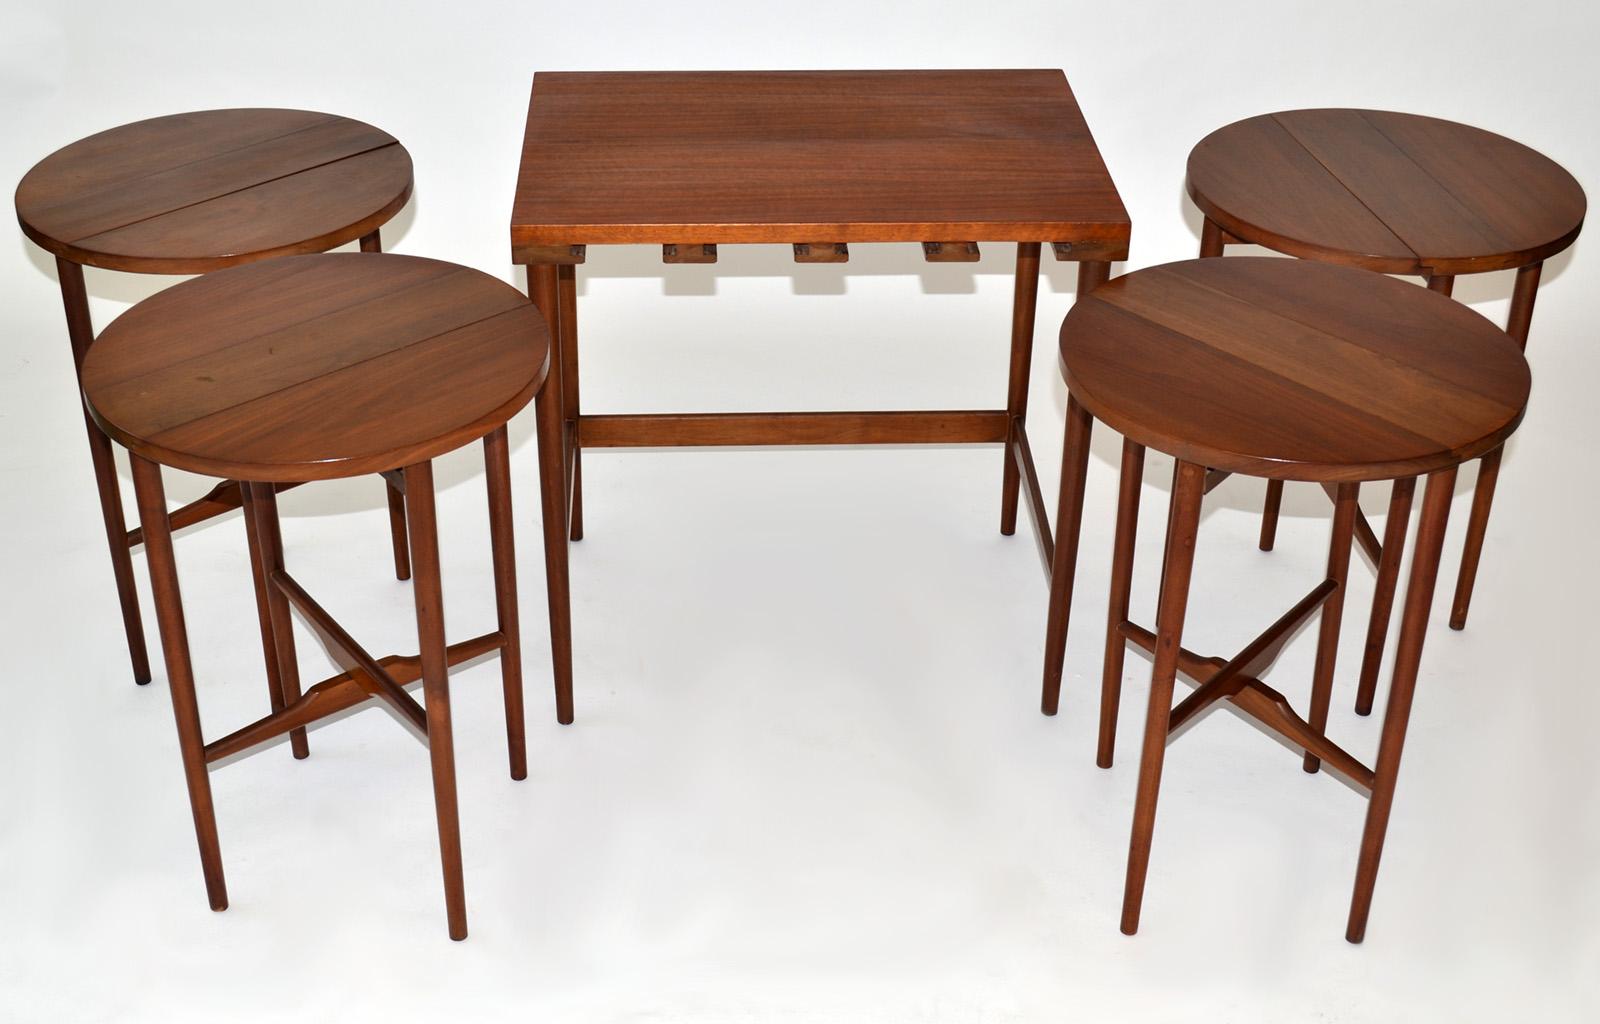 20th Century Bertha Schaefer for Singer & Sons Walnut Nesting Serving Tables 1950s For Sale